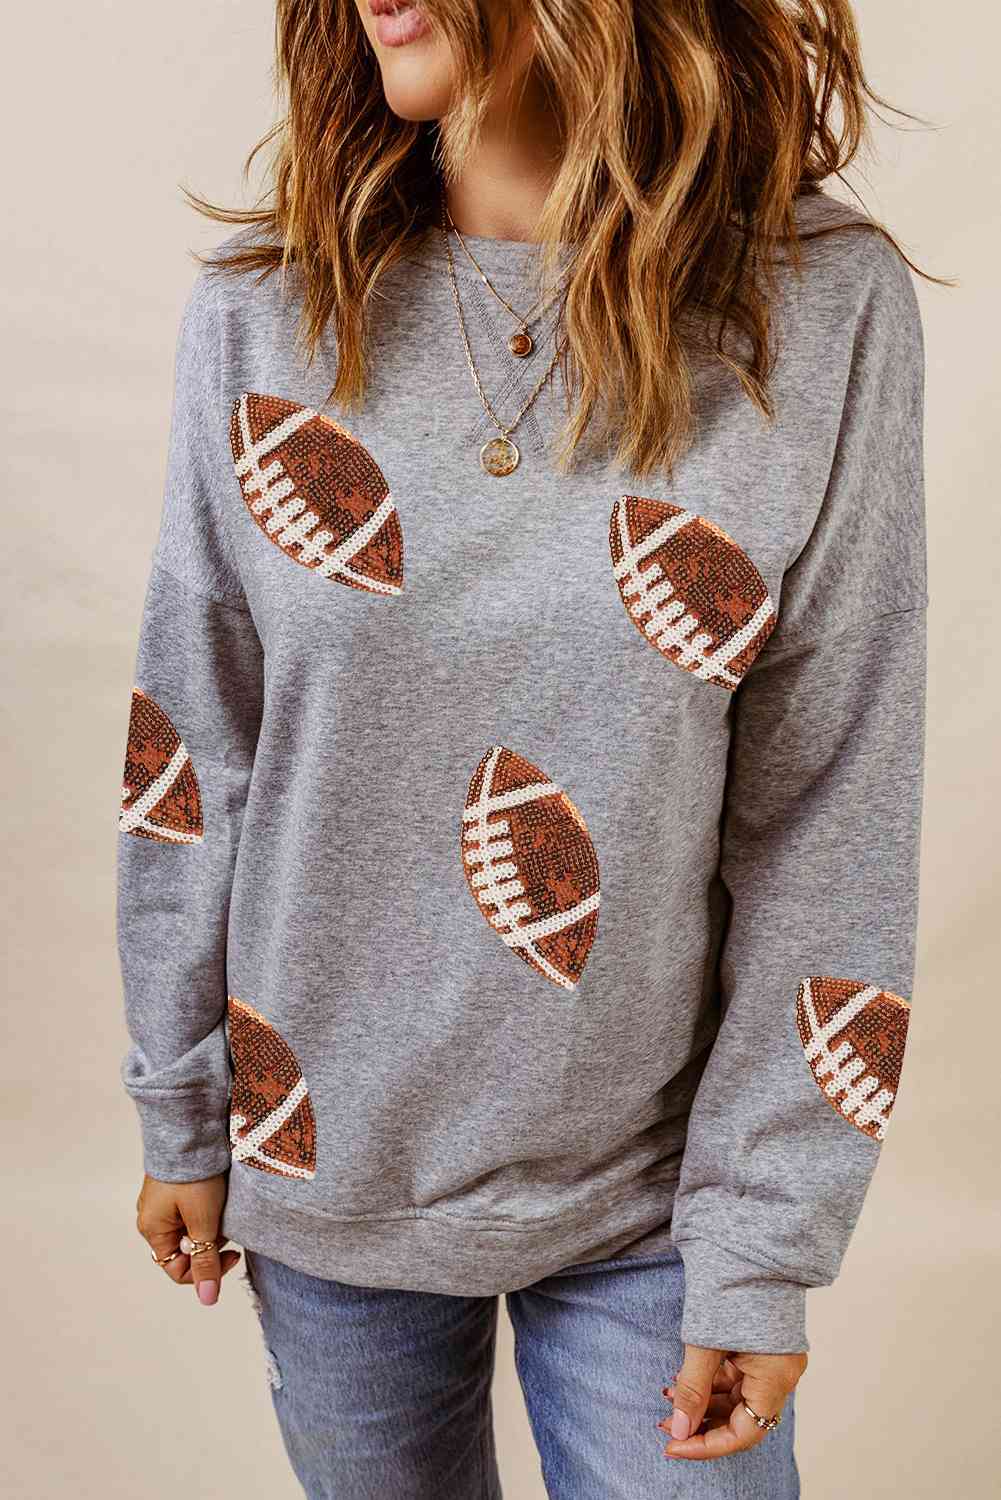 Sequin Football Graphic Sweatshirt